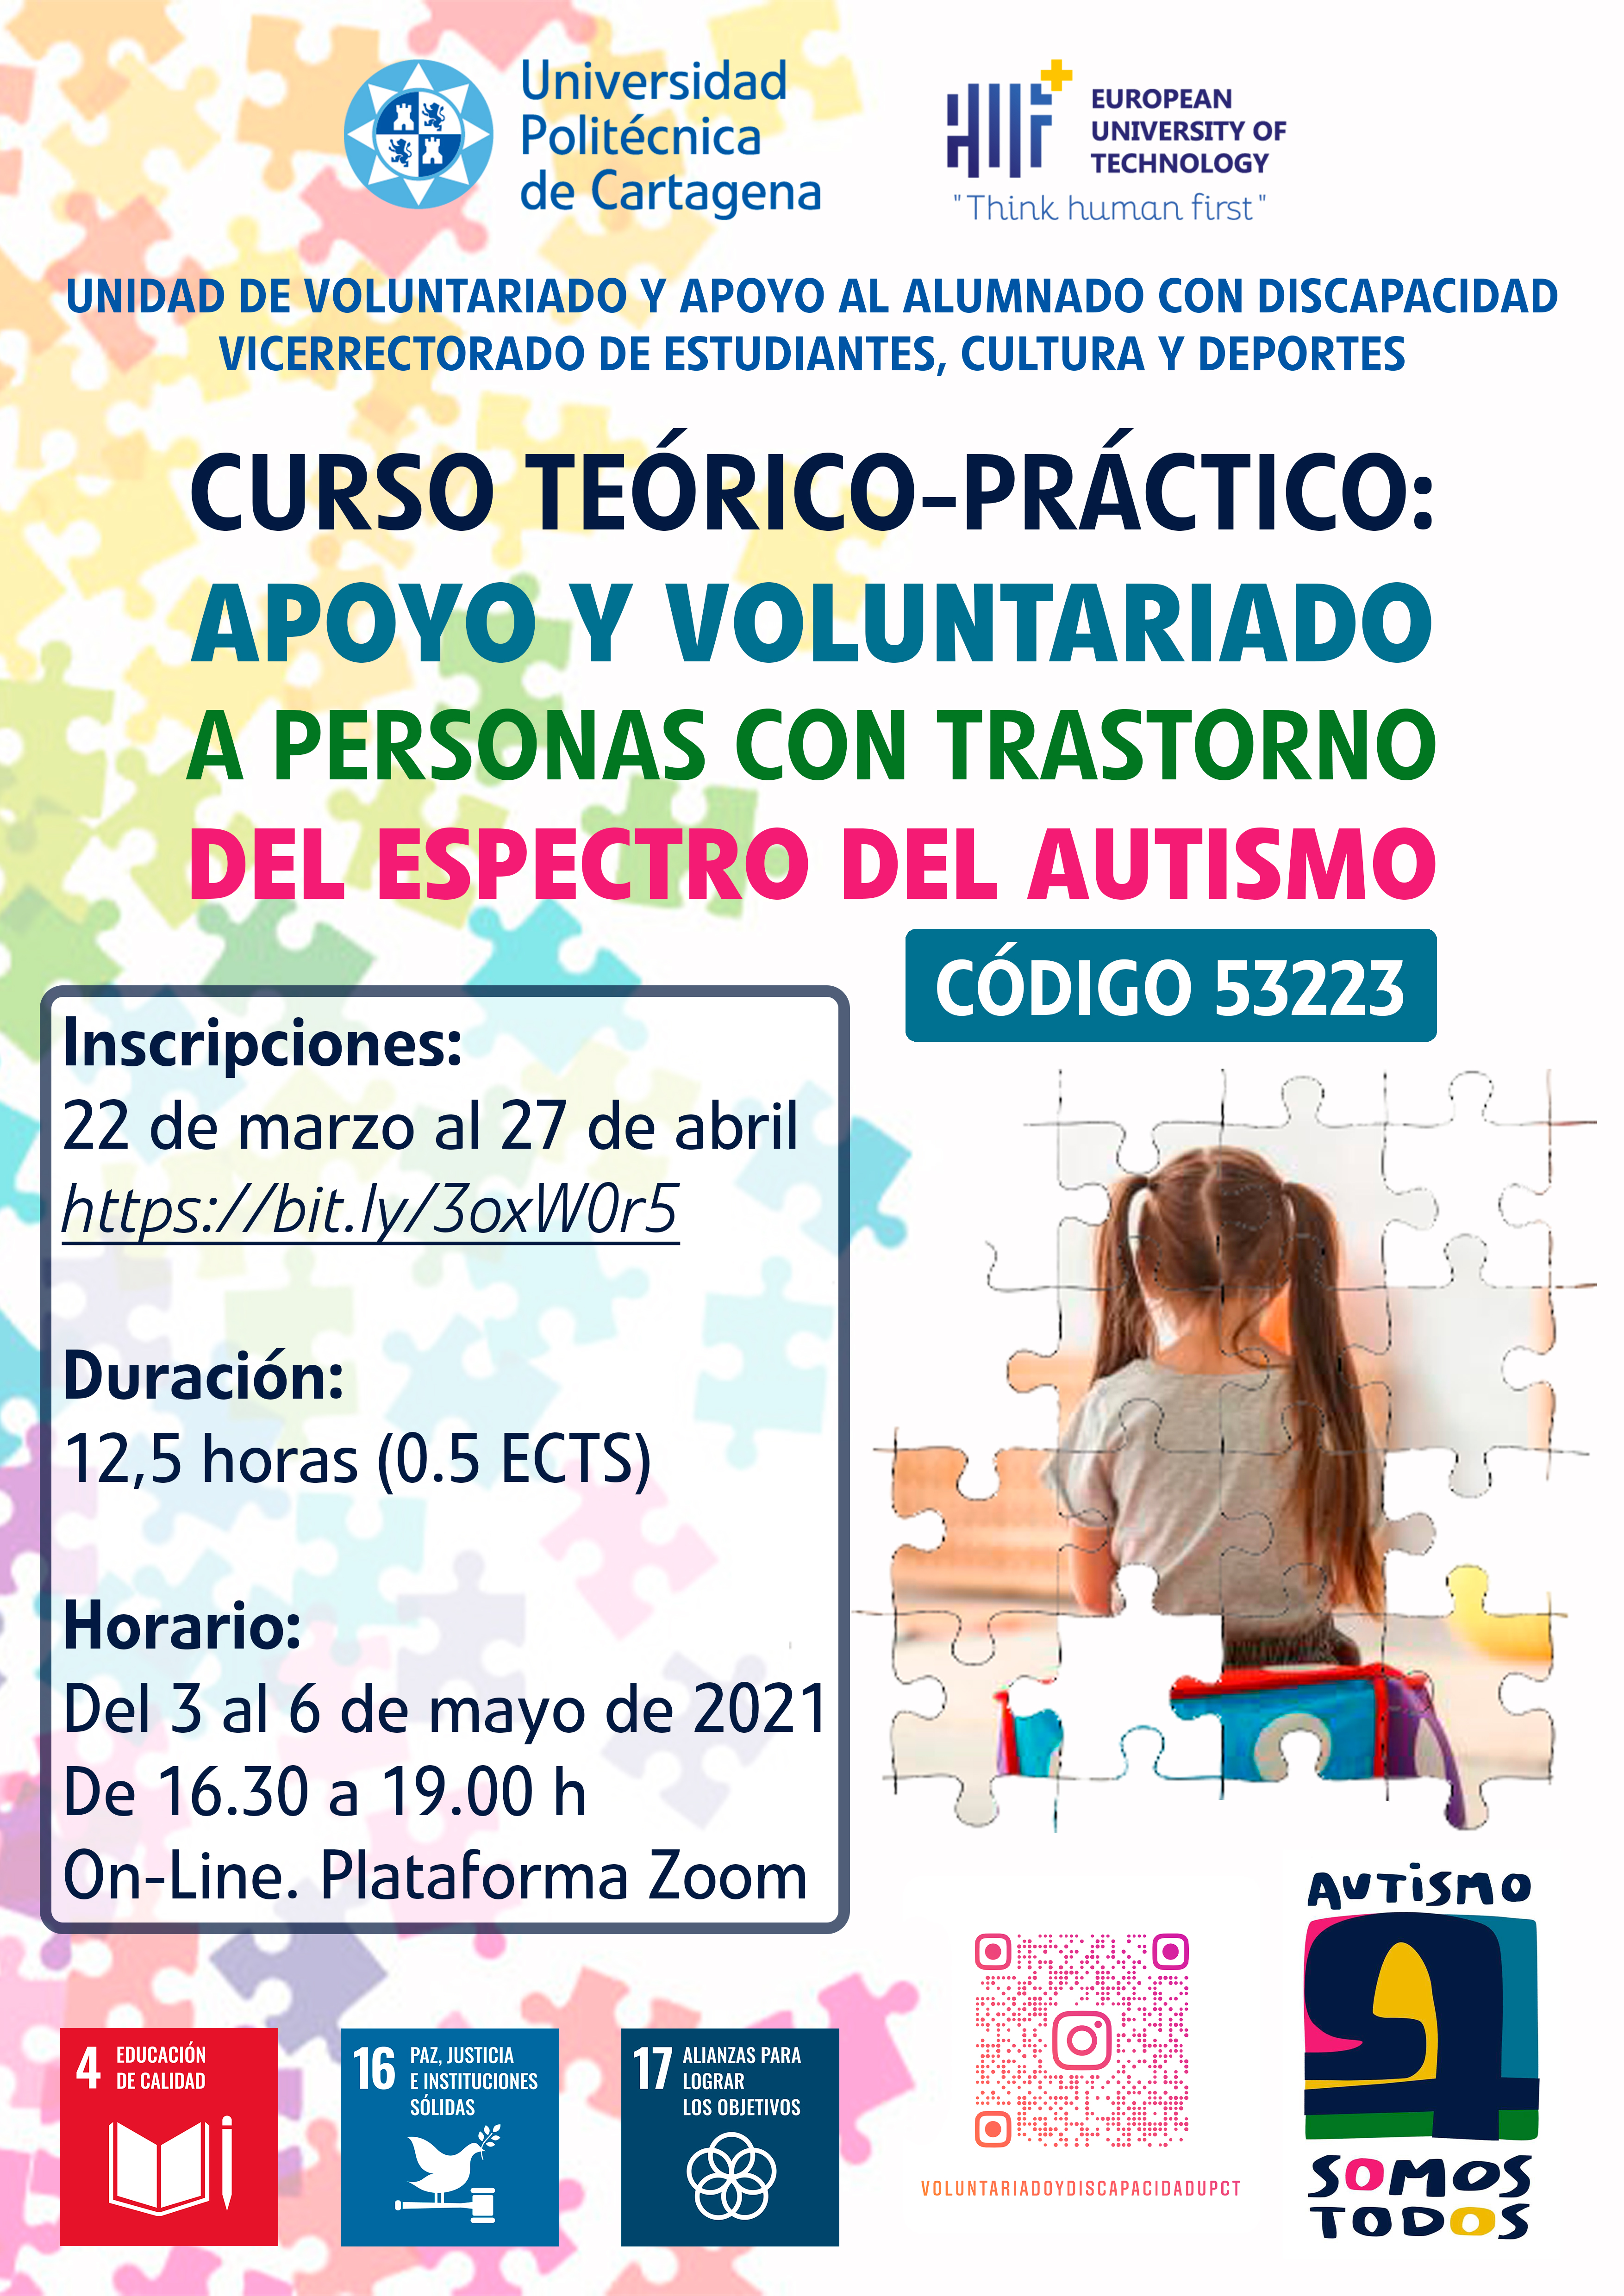 Curso teórico-práctico: apoyo y voluntariado a personas con trastorno del espectro del autismo (tea). Código 53223